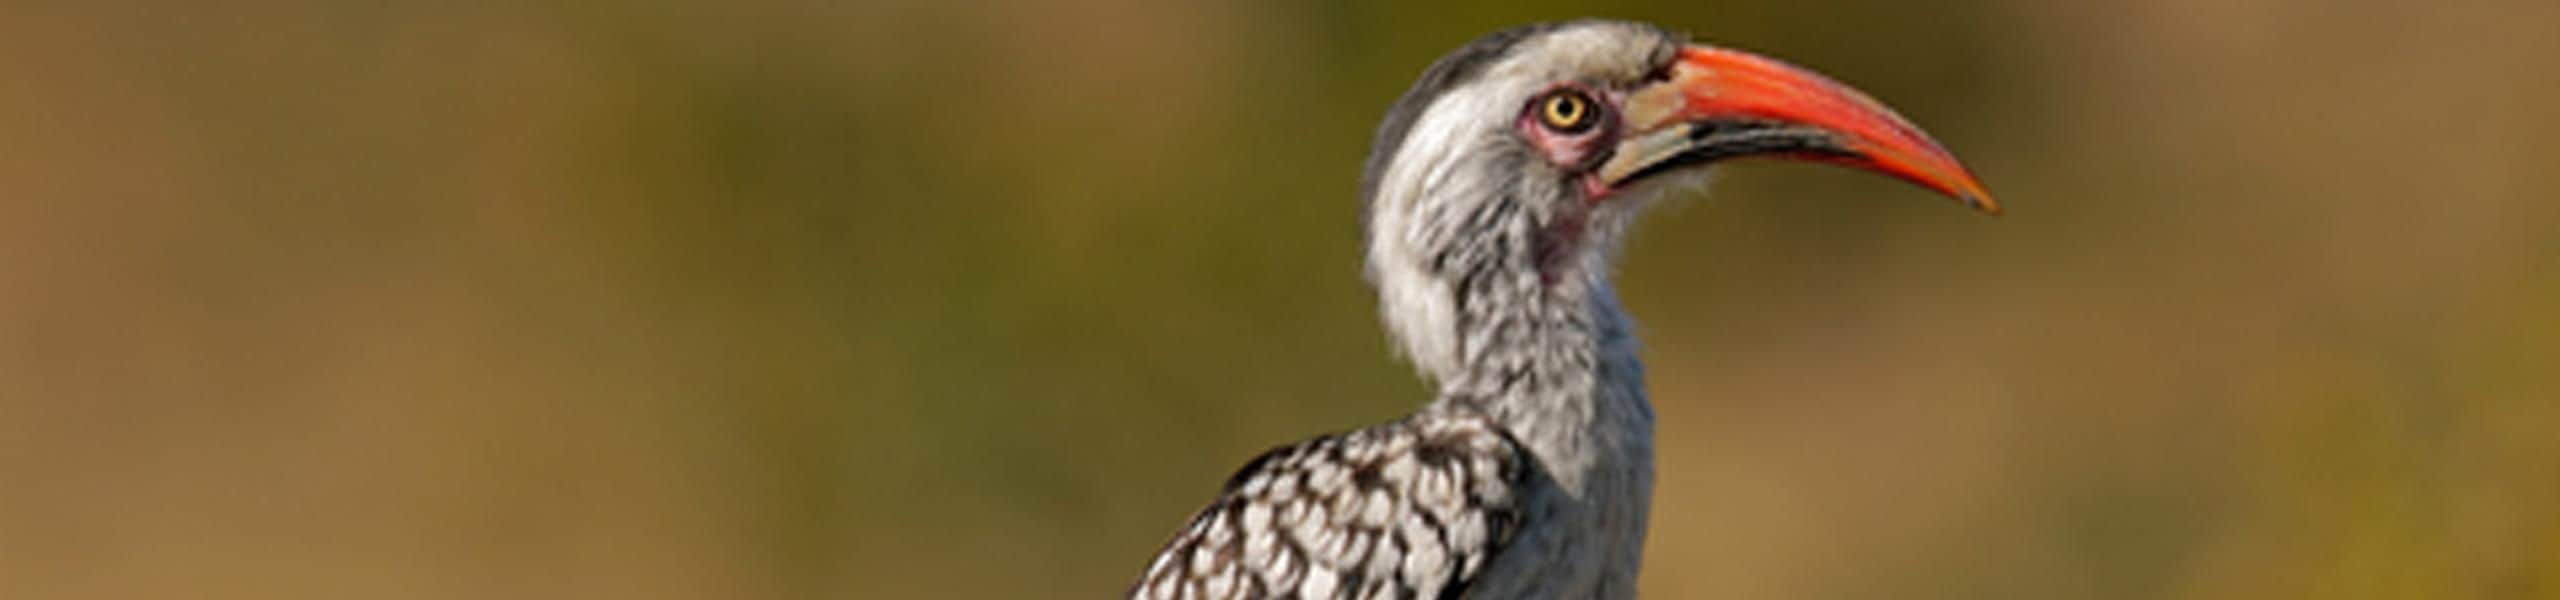 Red-billed hornbill - Tockus erythrorhynchus | Paultons Park